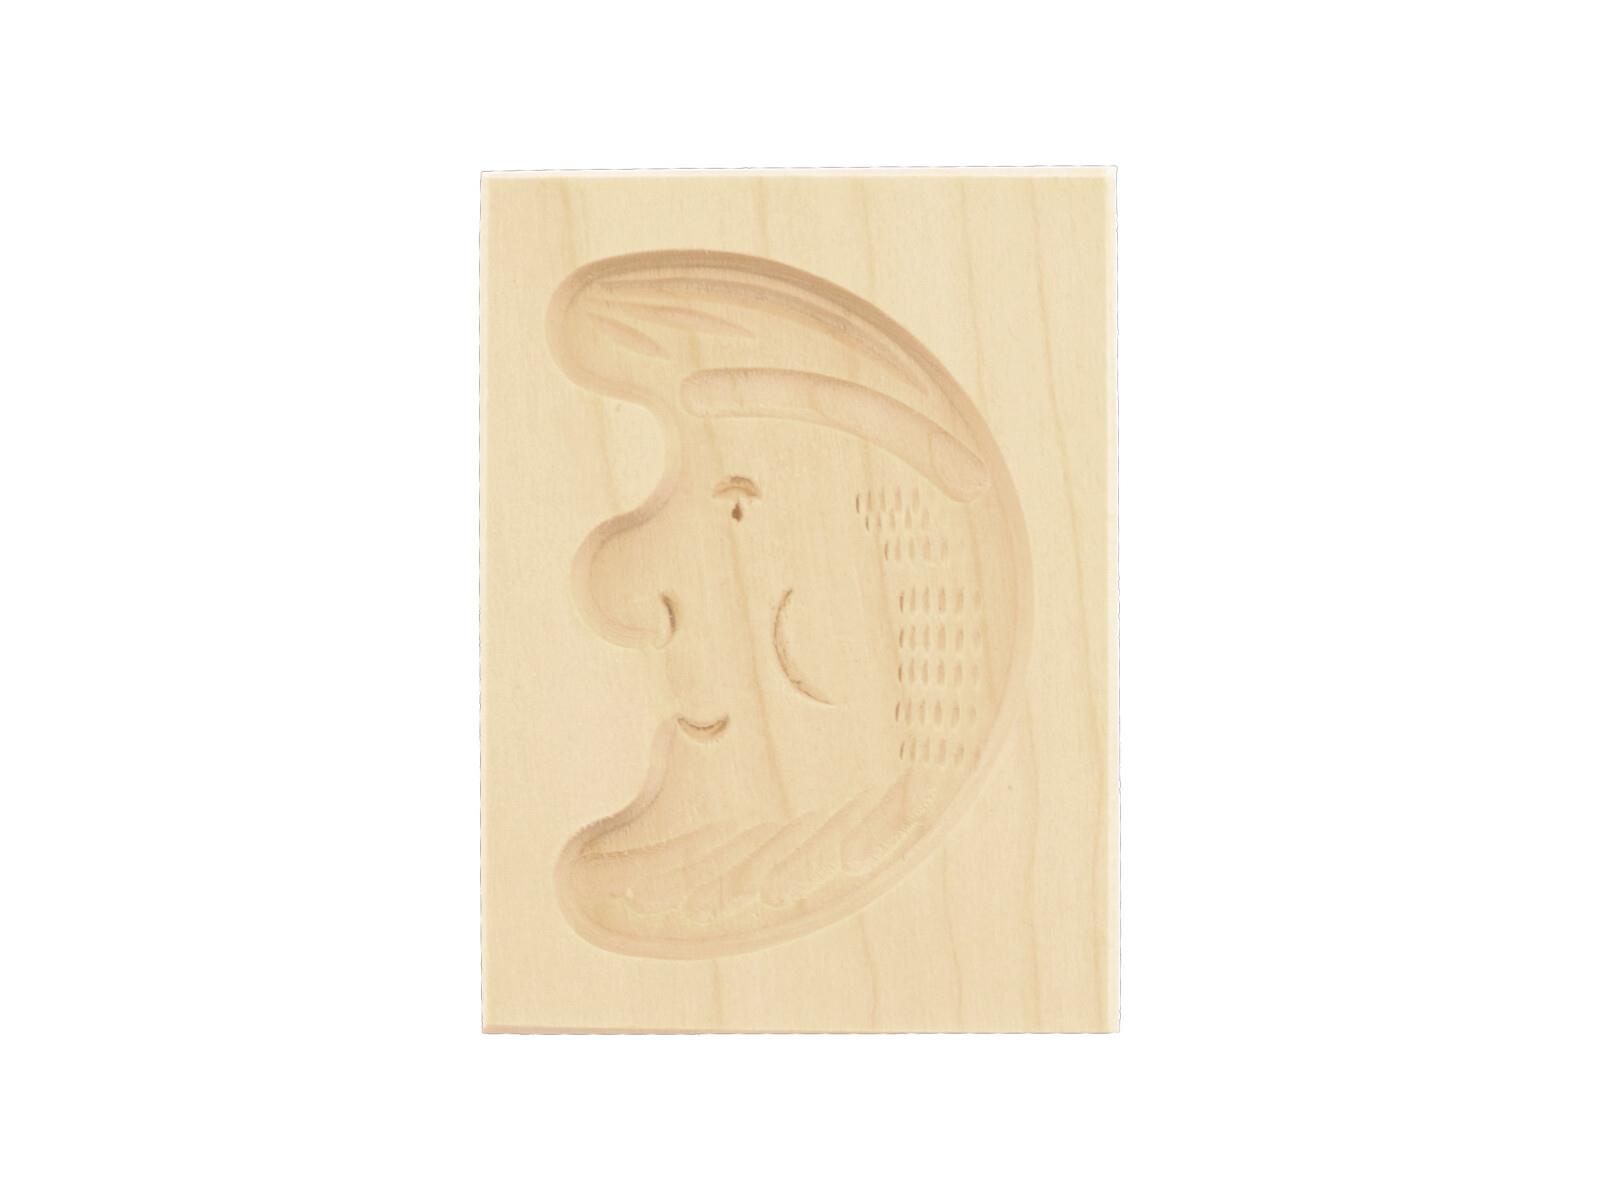 Spekulatiusform, 1 Bild, Mond aus Holz 8 cm